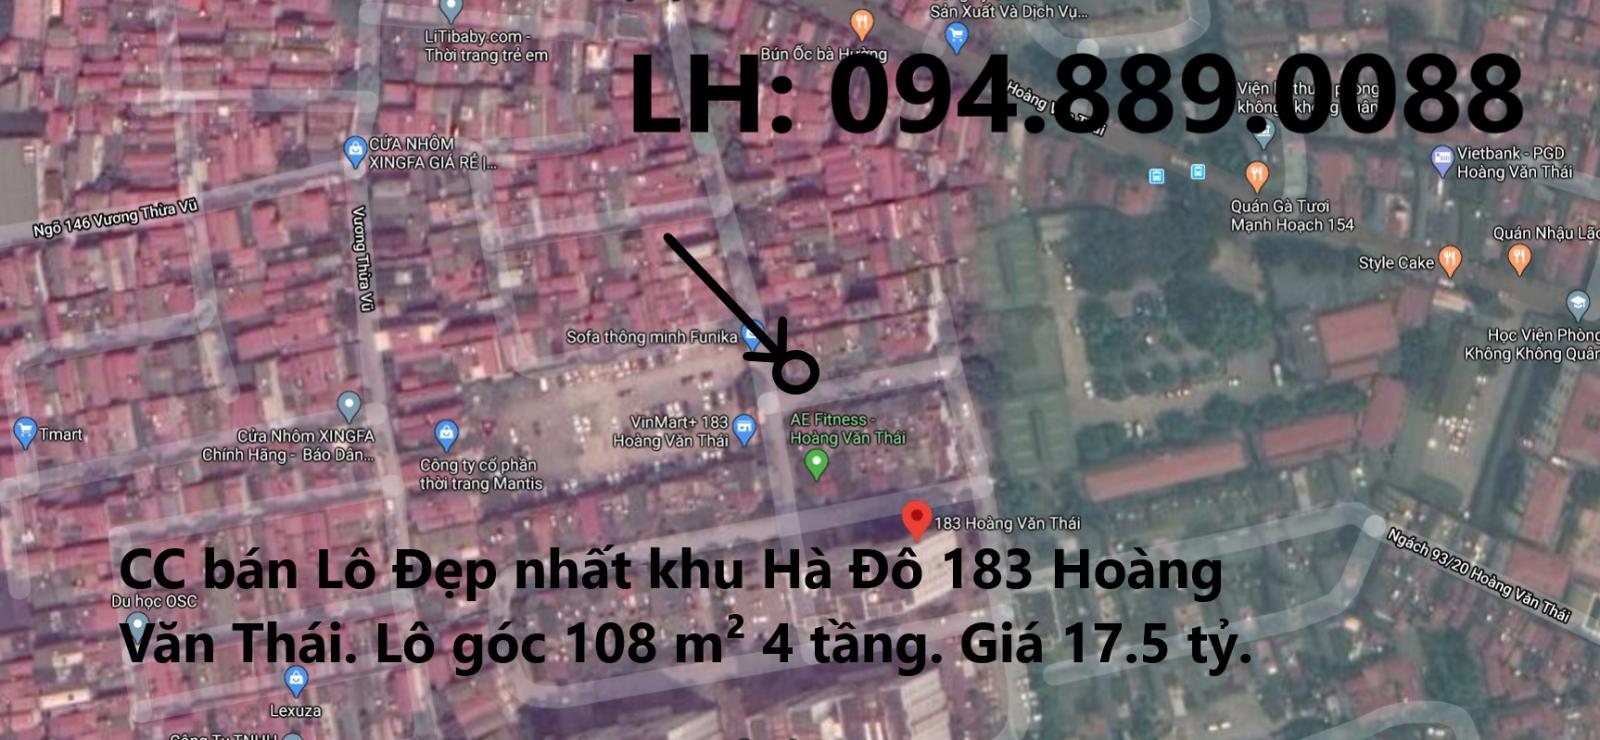 Chuyển nhà né dịch CORONA, CC bán gấp căn góc đẹp nhất khu liền kề Hà Đô 183 Hoàng Văn Thái, Q.Thanh Xuân. 17.5 tỷ